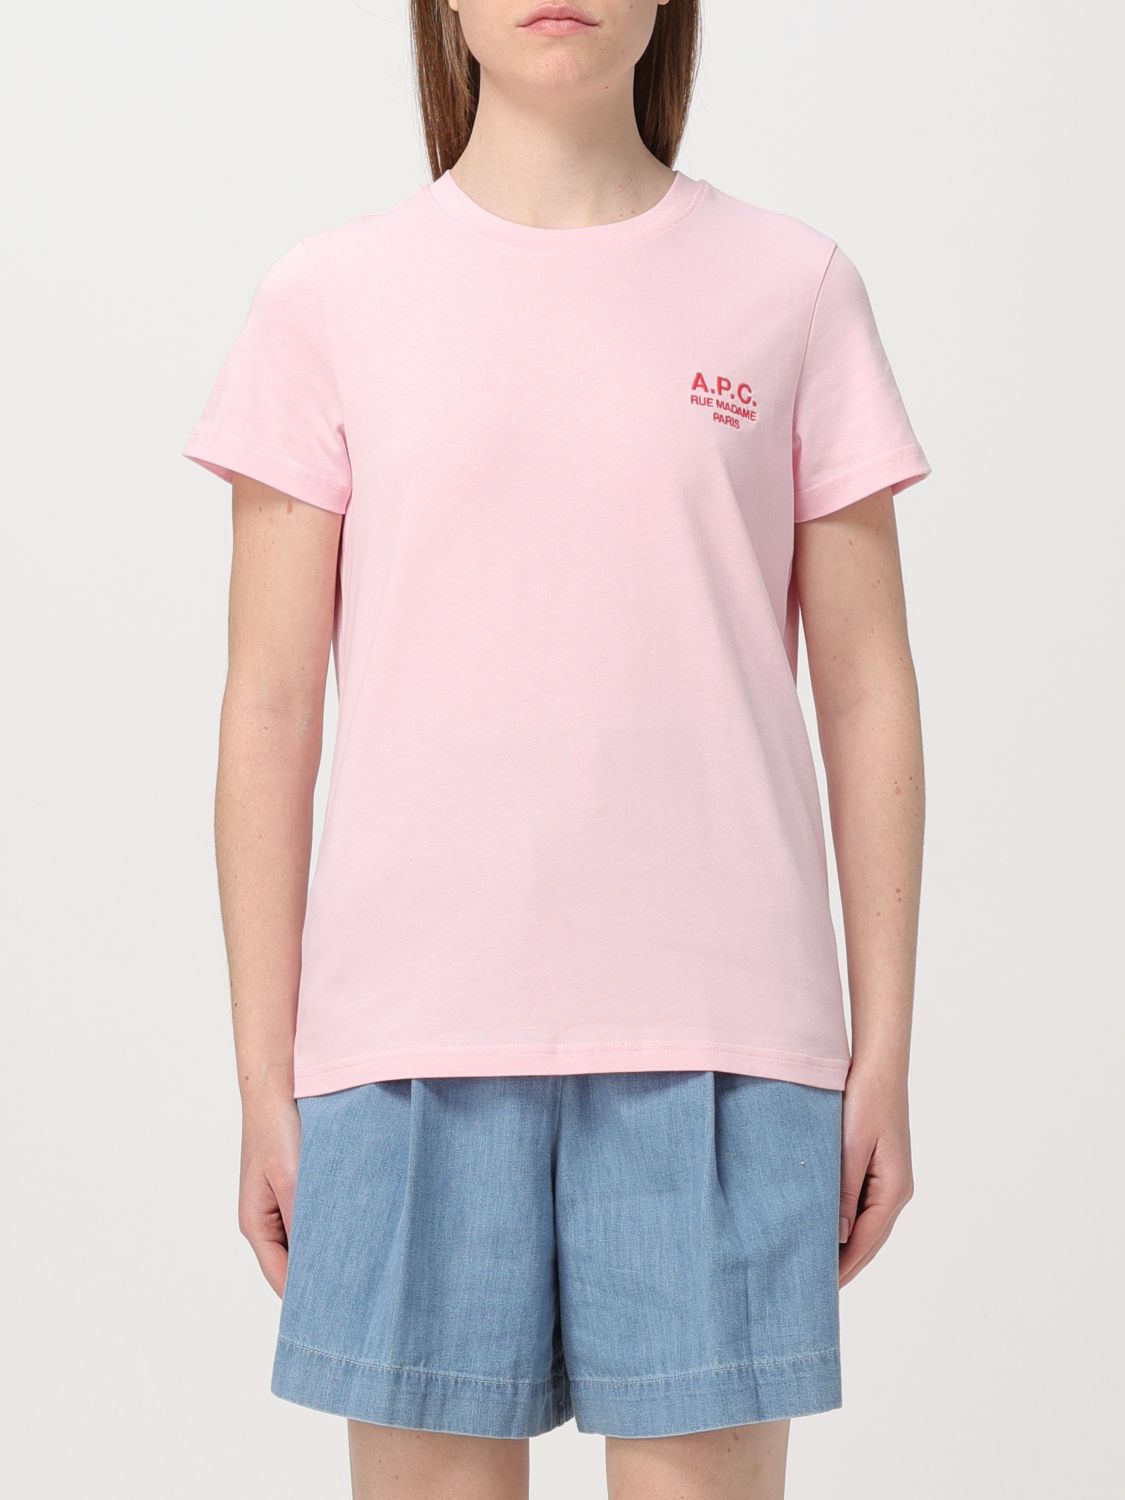 Shop Apc T-shirt A.p.c. Woman Color Blush Pink